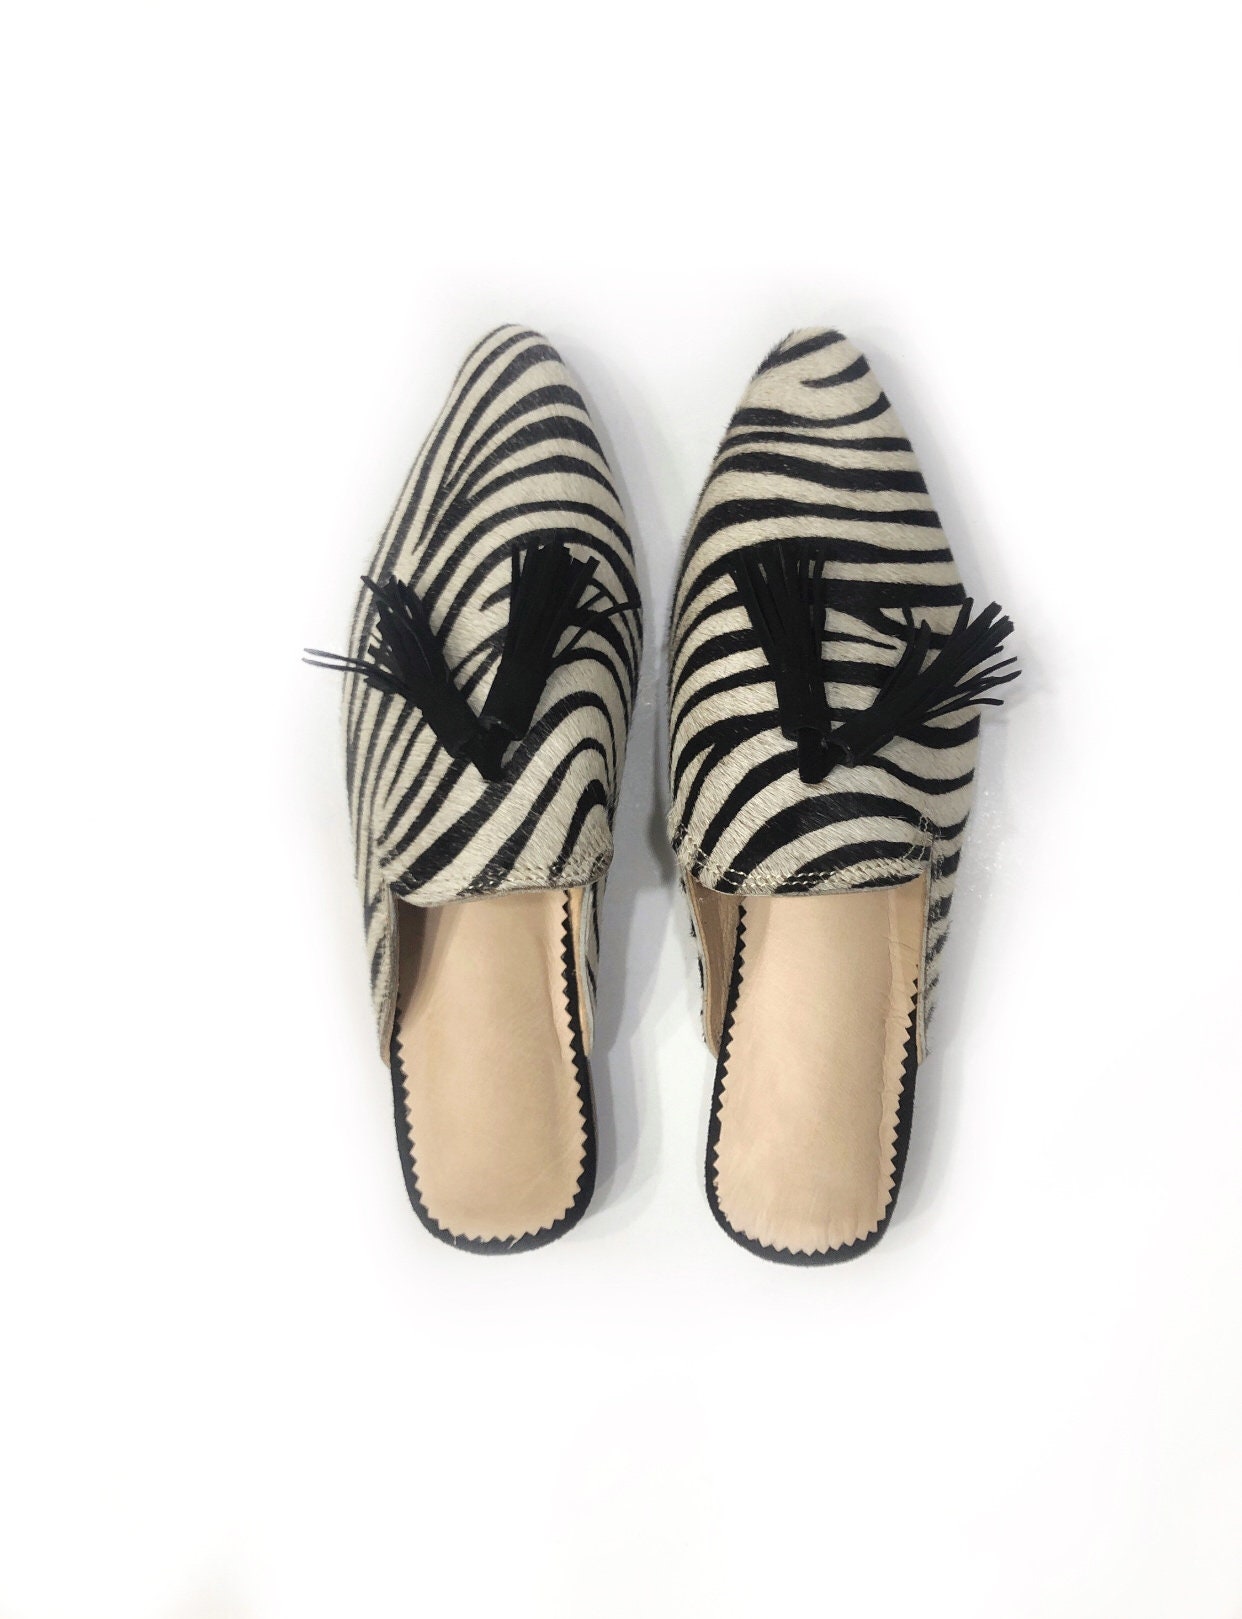 Modern Zebra Slippers for Women Leather Slipper Handmade Zebre - Etsy